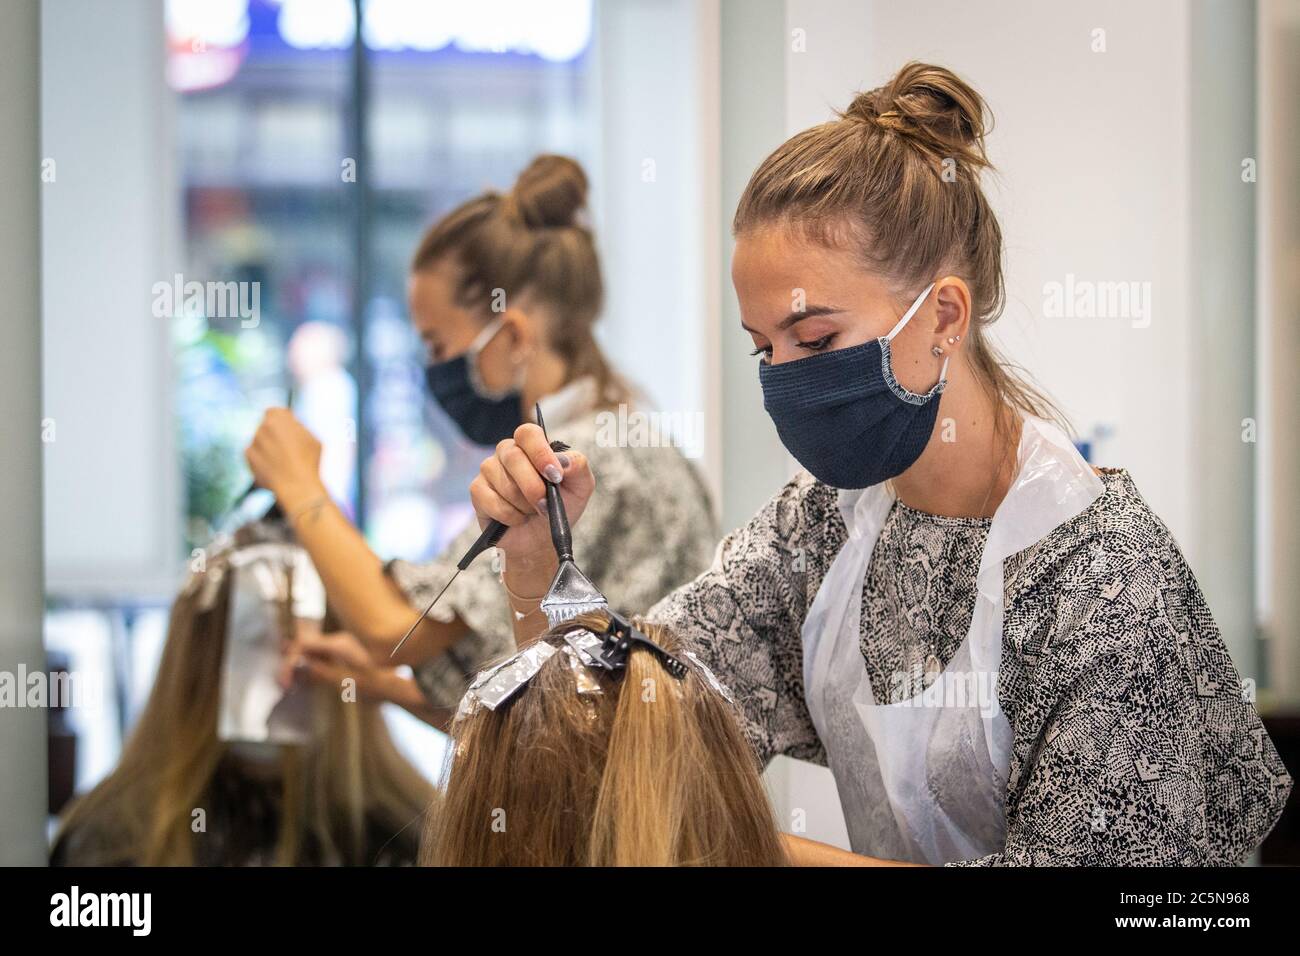 Parrucchiere indossando maschera mentre lavora e tagliando i capelli in parrucchiere come il coronavirus lockdown eases in Inghilterra 4 luglio 2020 Foto Stock